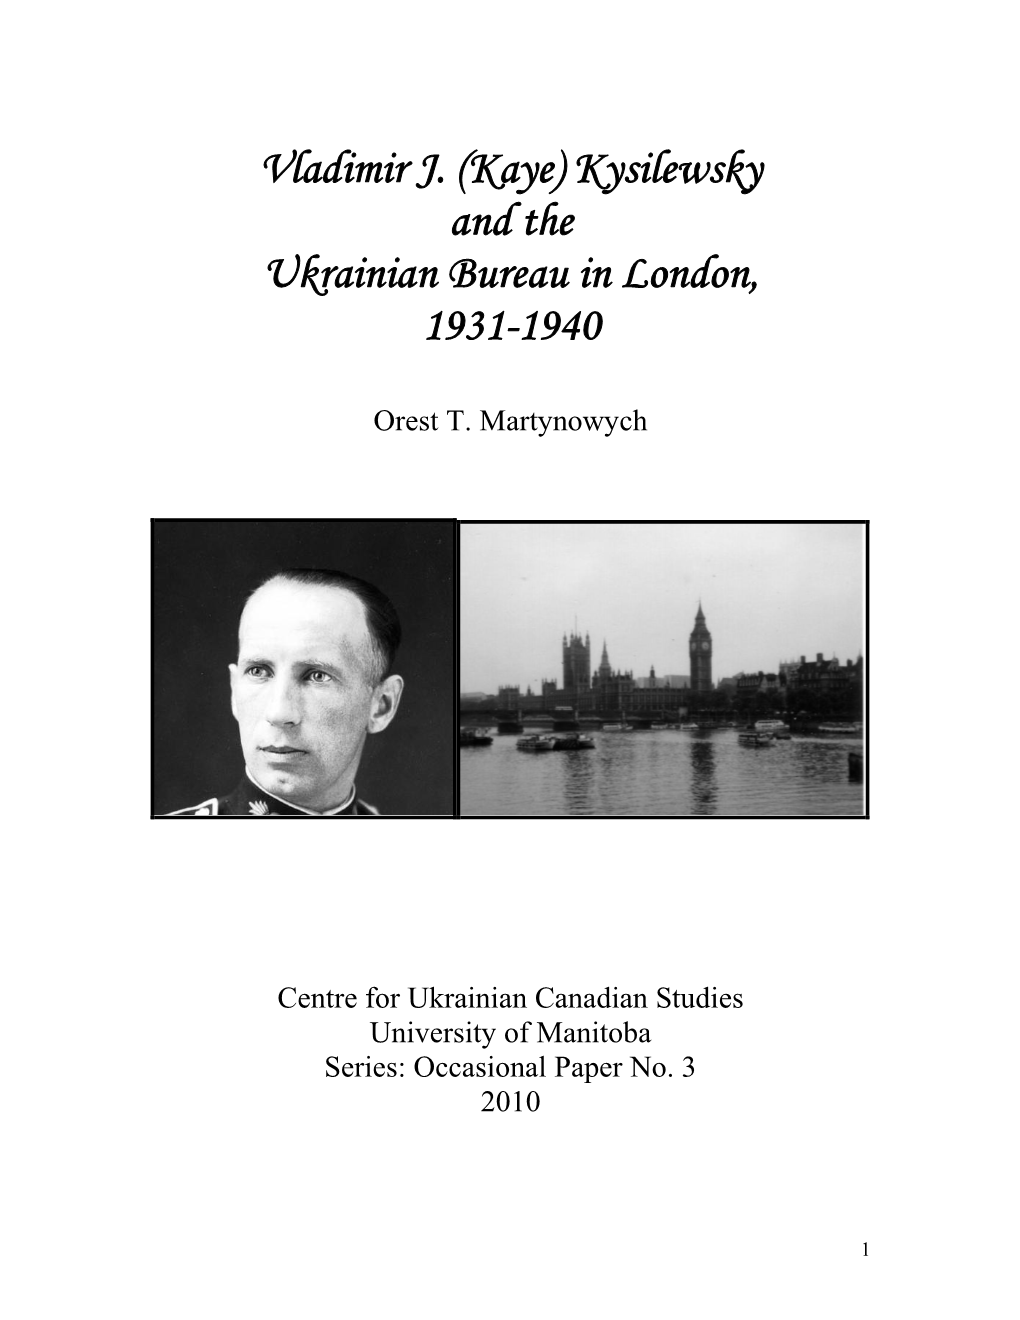 Kaye) Kysilewsky and the Ukrainian Bureau in London, 1931-1940